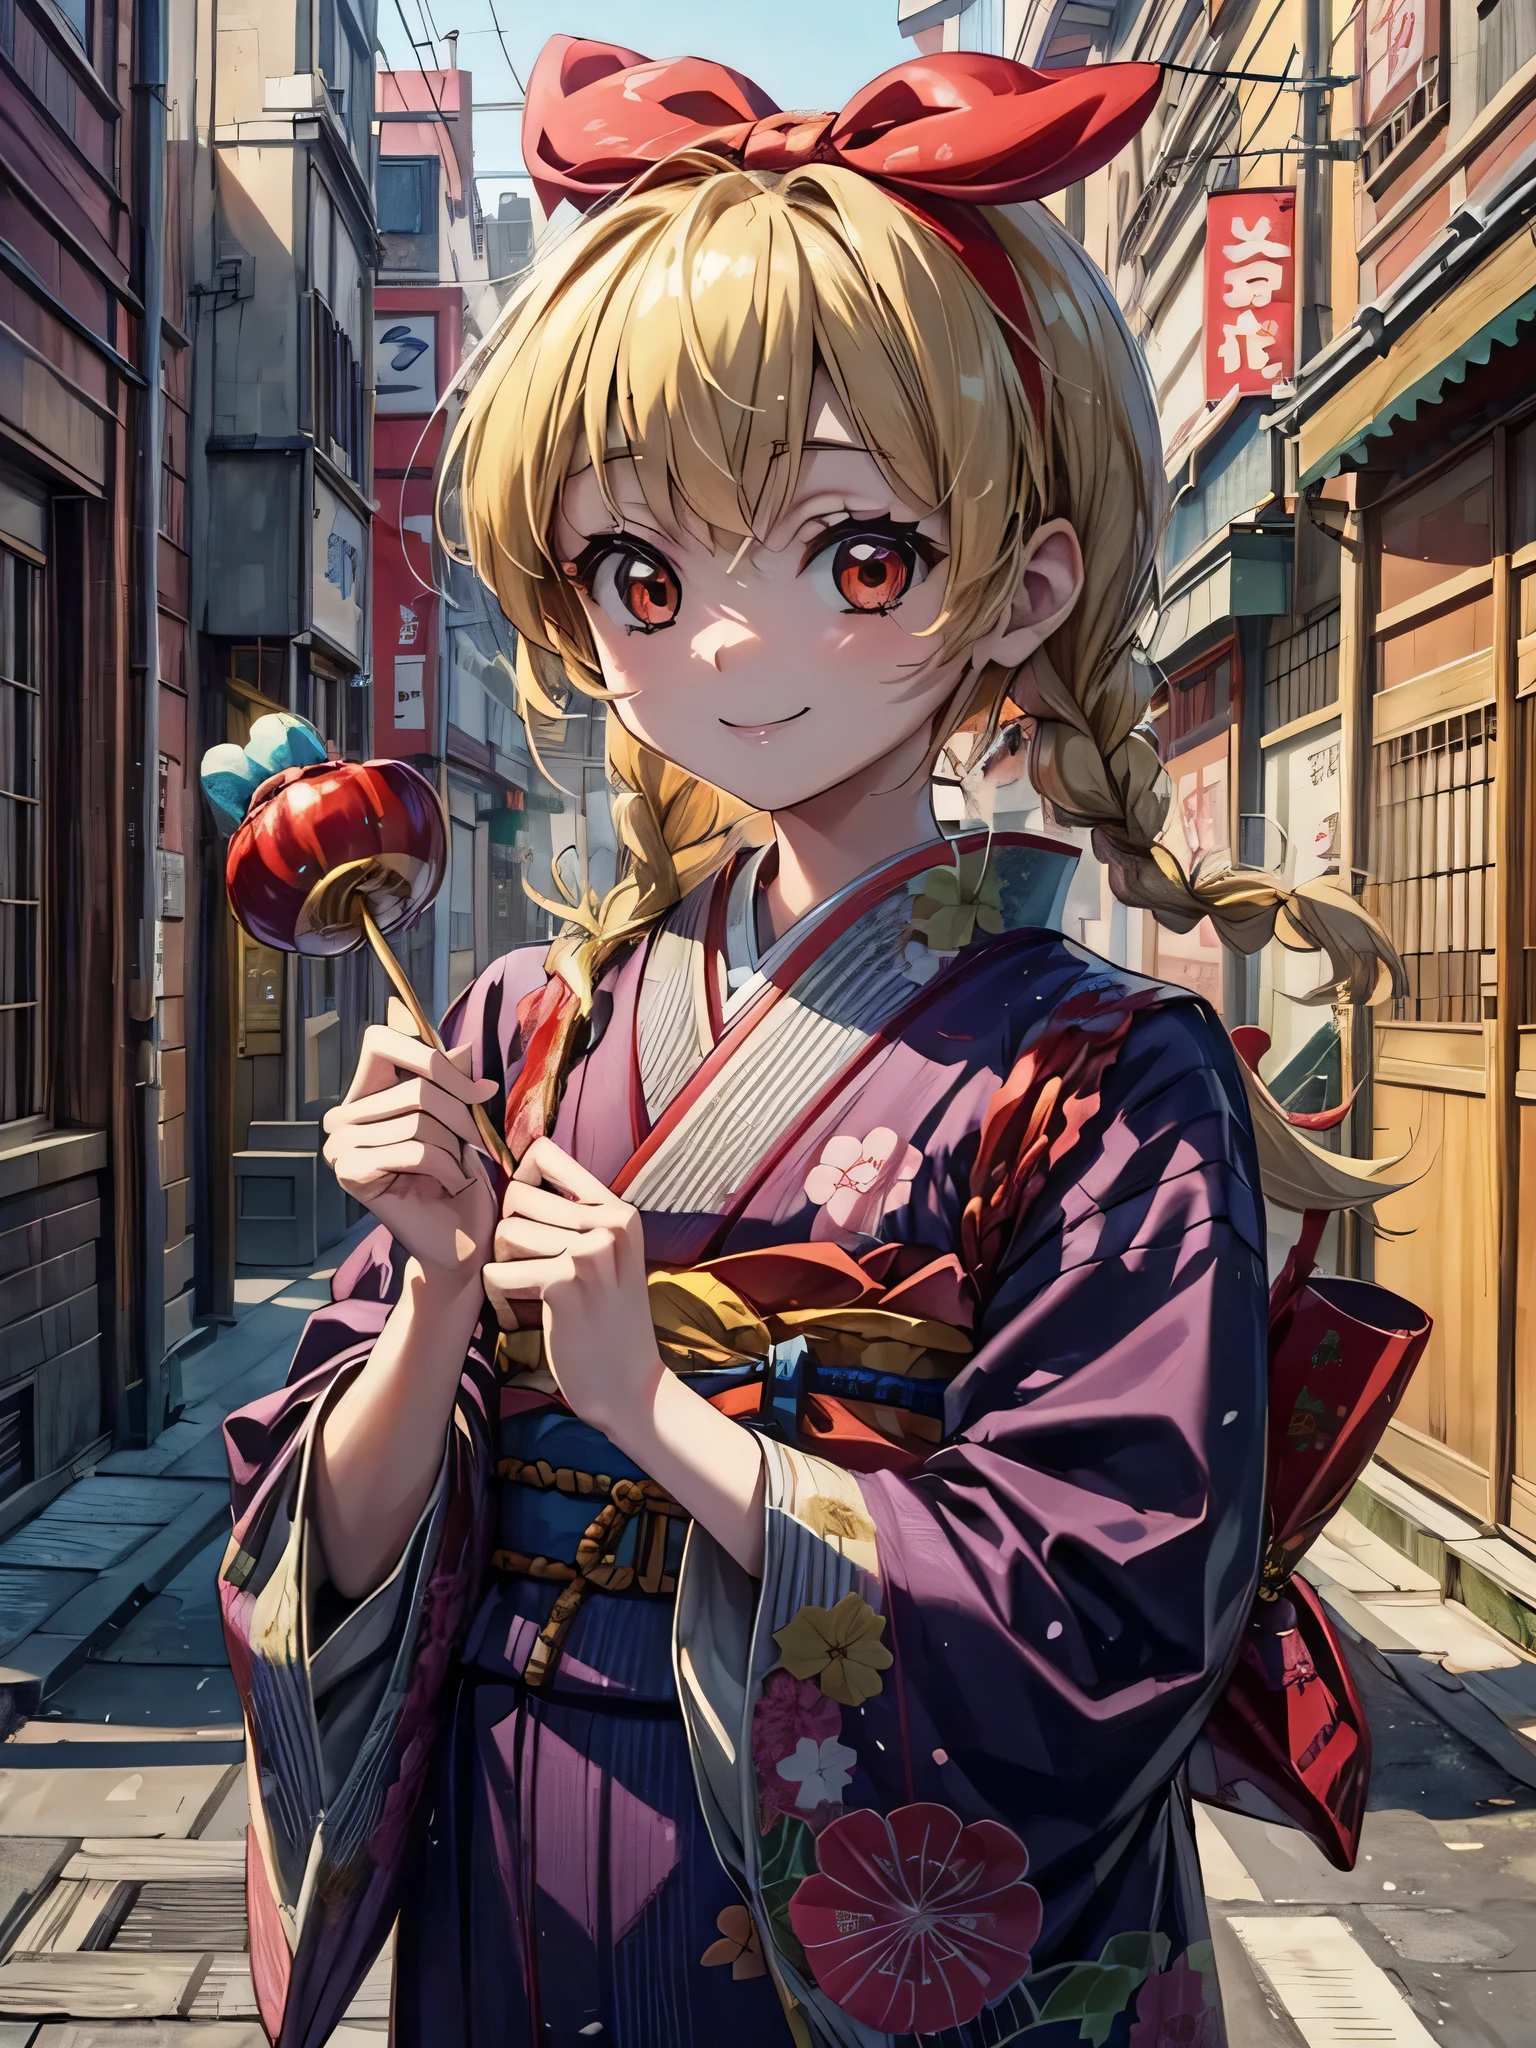 可爱的动漫日本女孩抱着熊，拿着糖果棒, 1女孩, 金头发, 日本衣服, twin 编织s, 和服, 食物, 微笑, 面具, 编织, 面具 on head, 独自的, 糖苹果